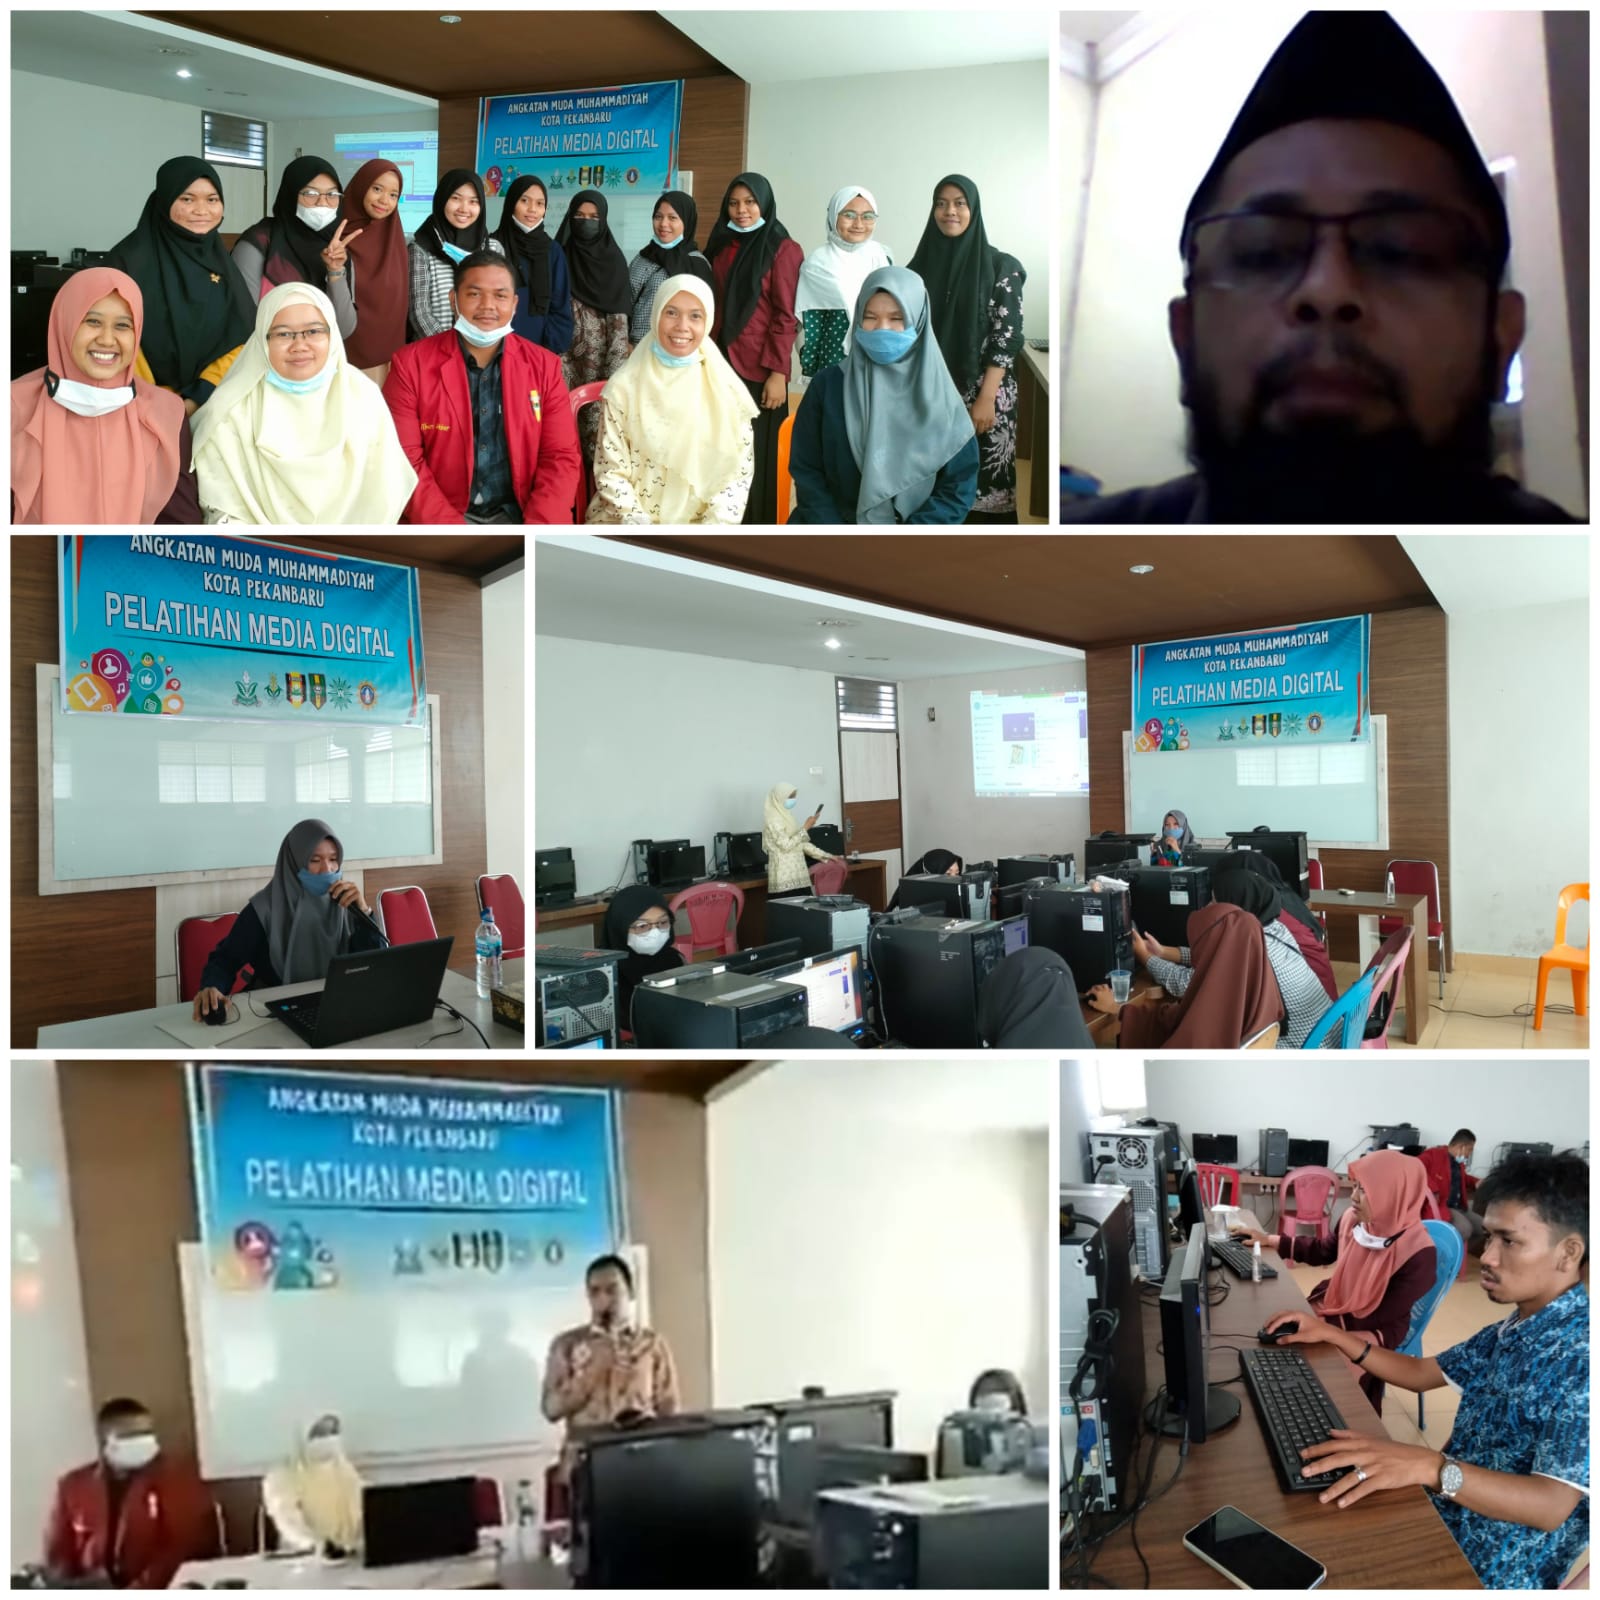 Angkatan Muda Muhammadiyah Pekanbaru Gelar Pelatihan Media Digital